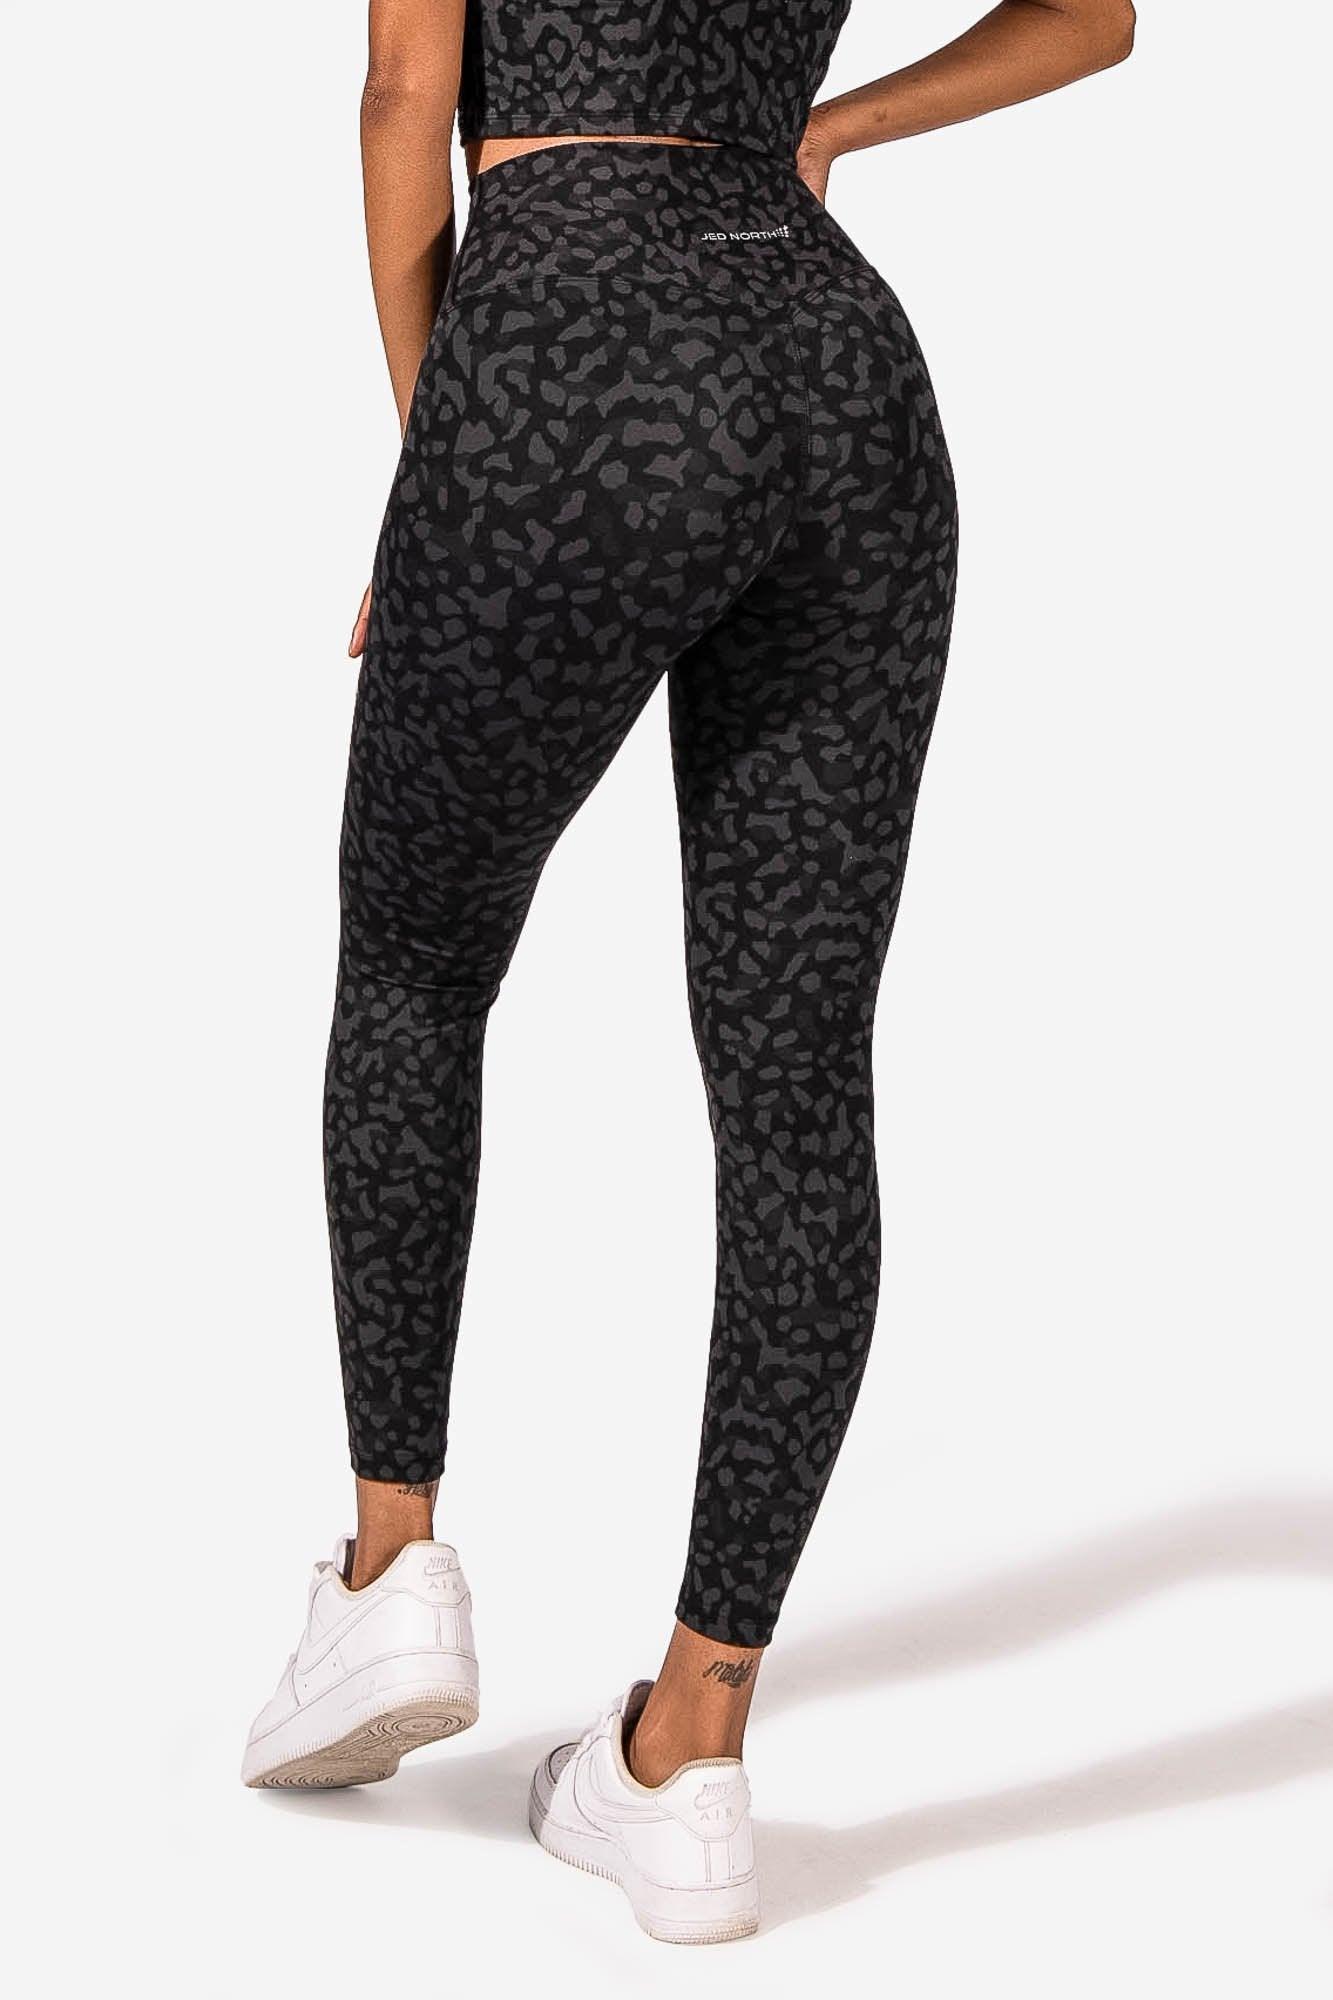 Full length cheetah print leggings. So soft, softest - Depop